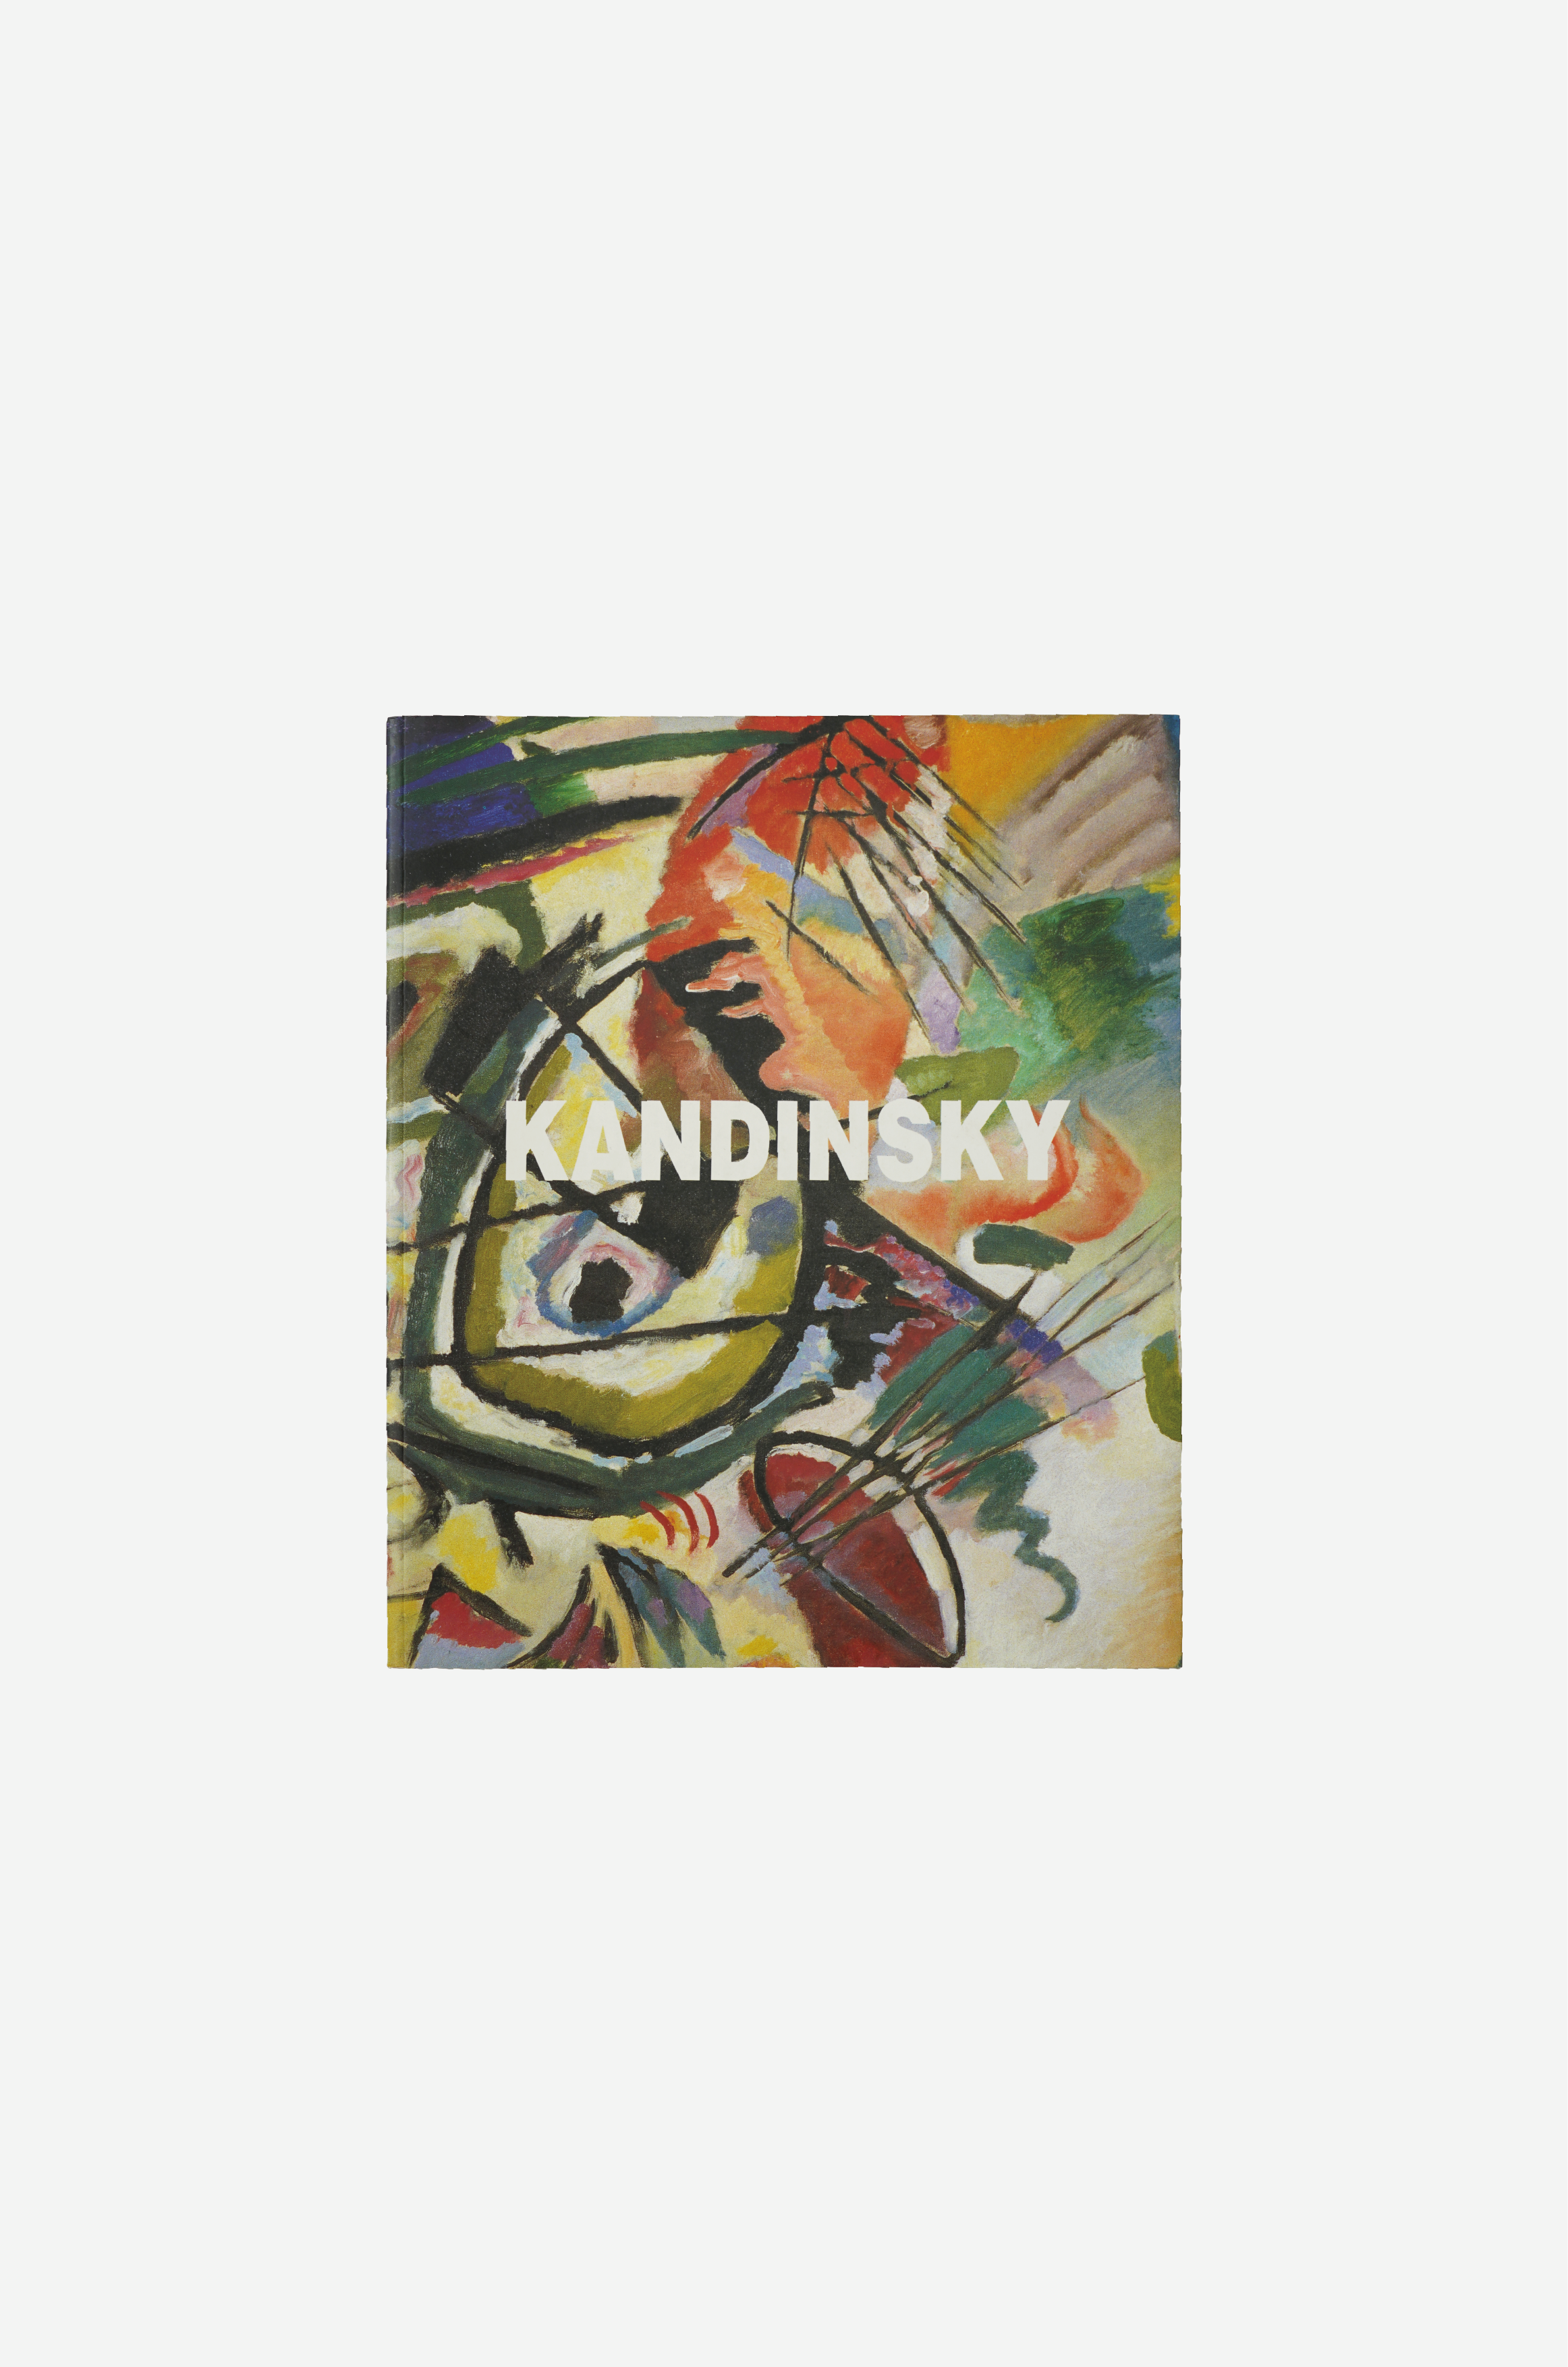 Kandinsky Exhibition